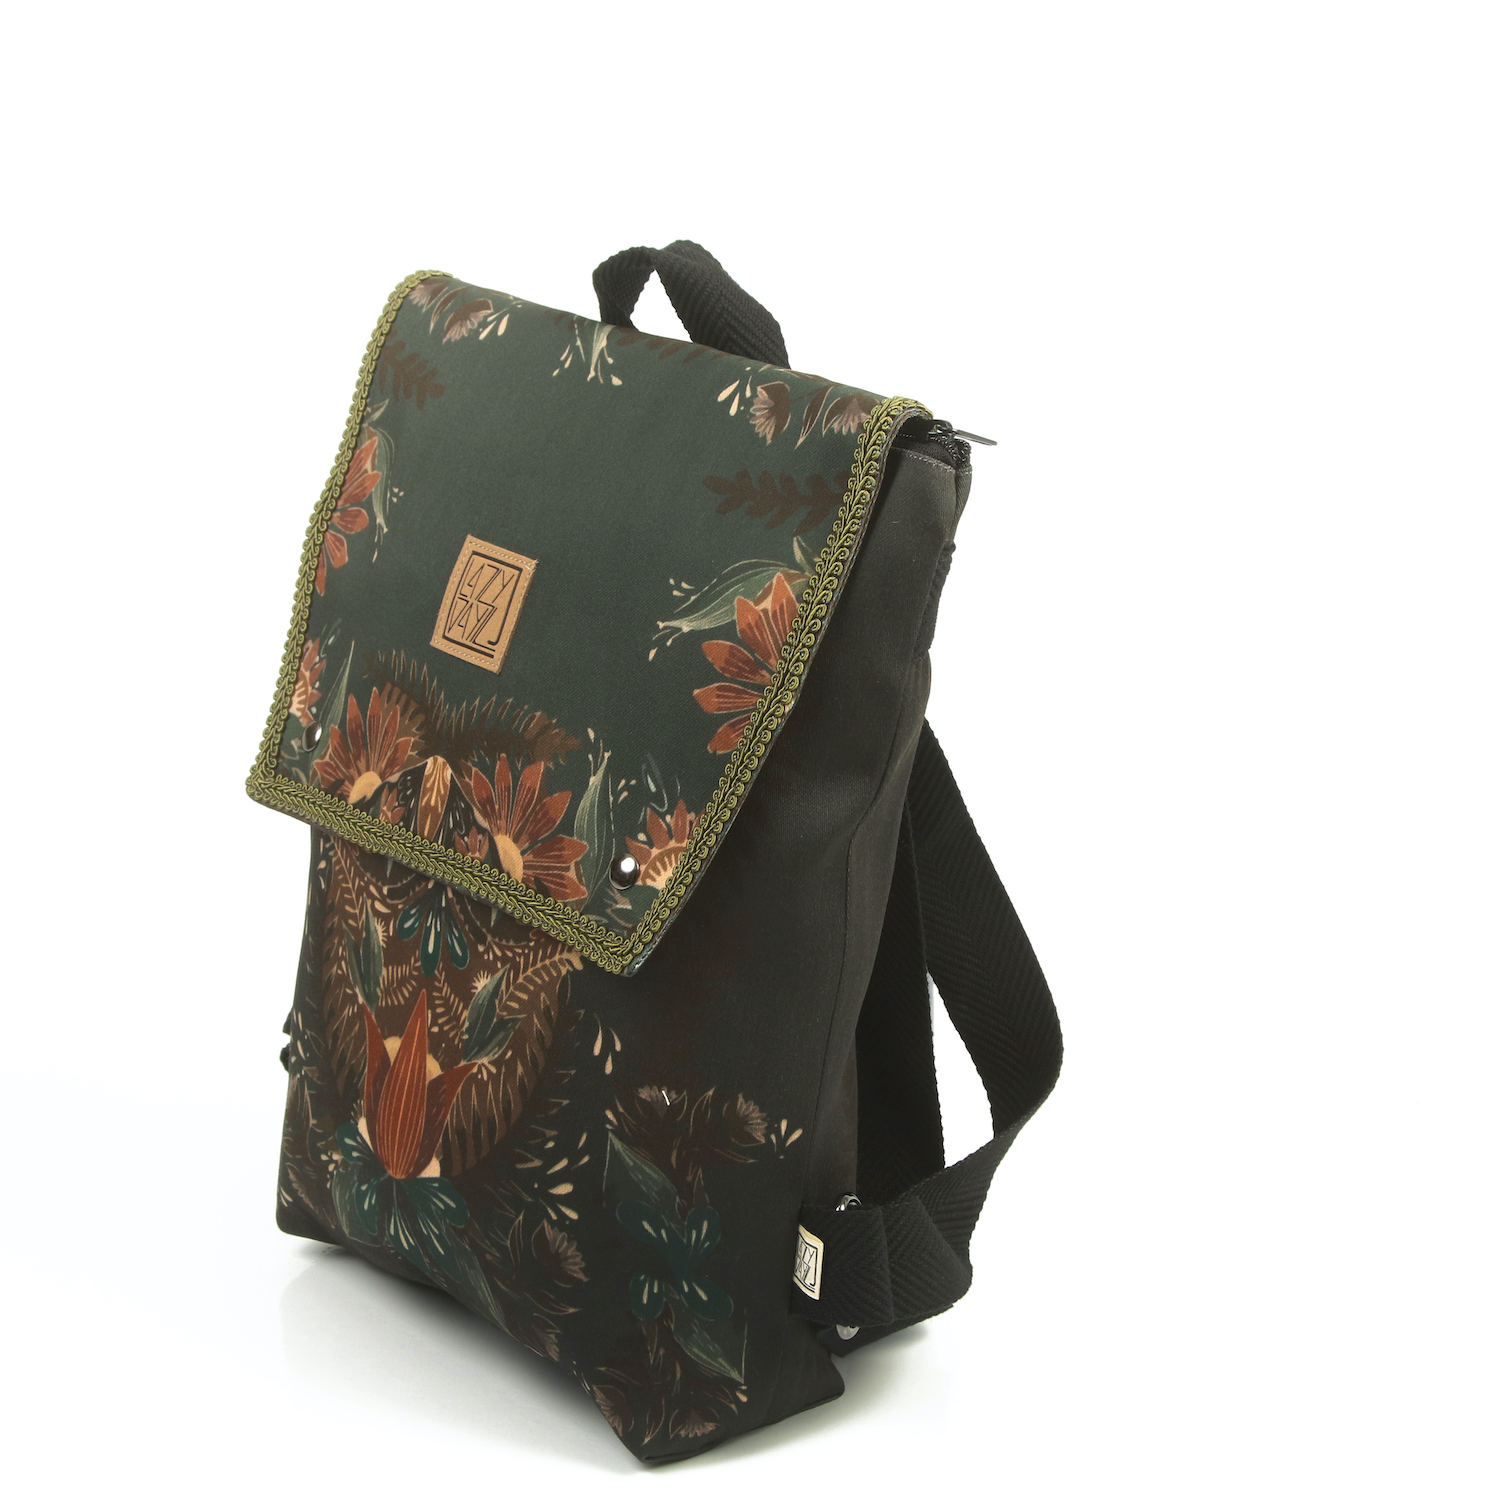 LazyDayz Designs Backpack γυναικείος σάκος πλάτης χειροποίητος bb0706b